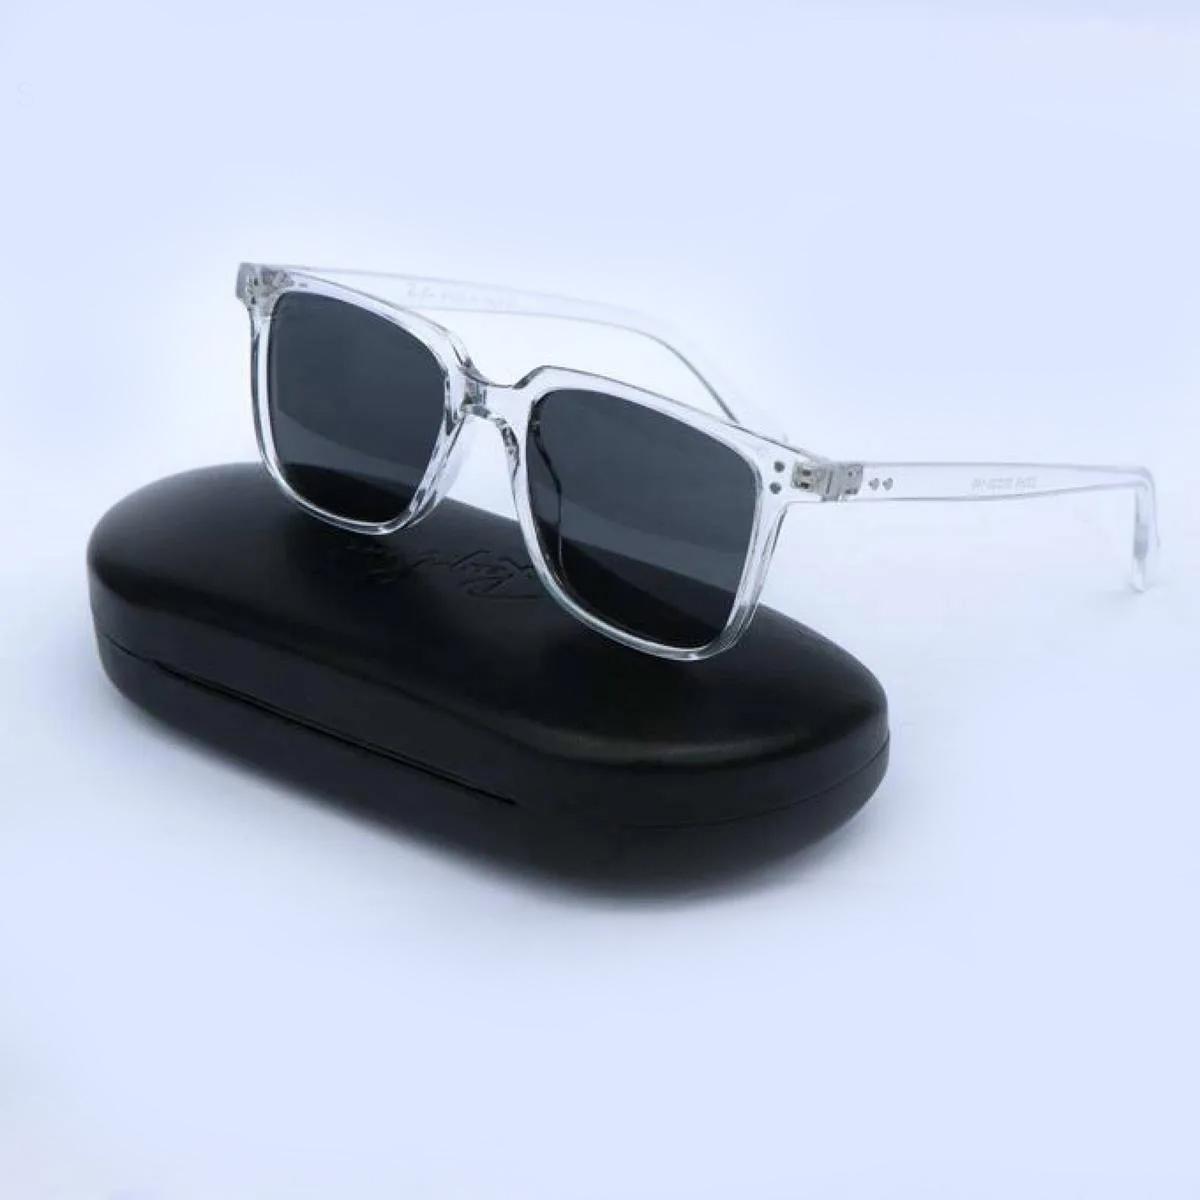 Transparen Frame Sunglasses for Men